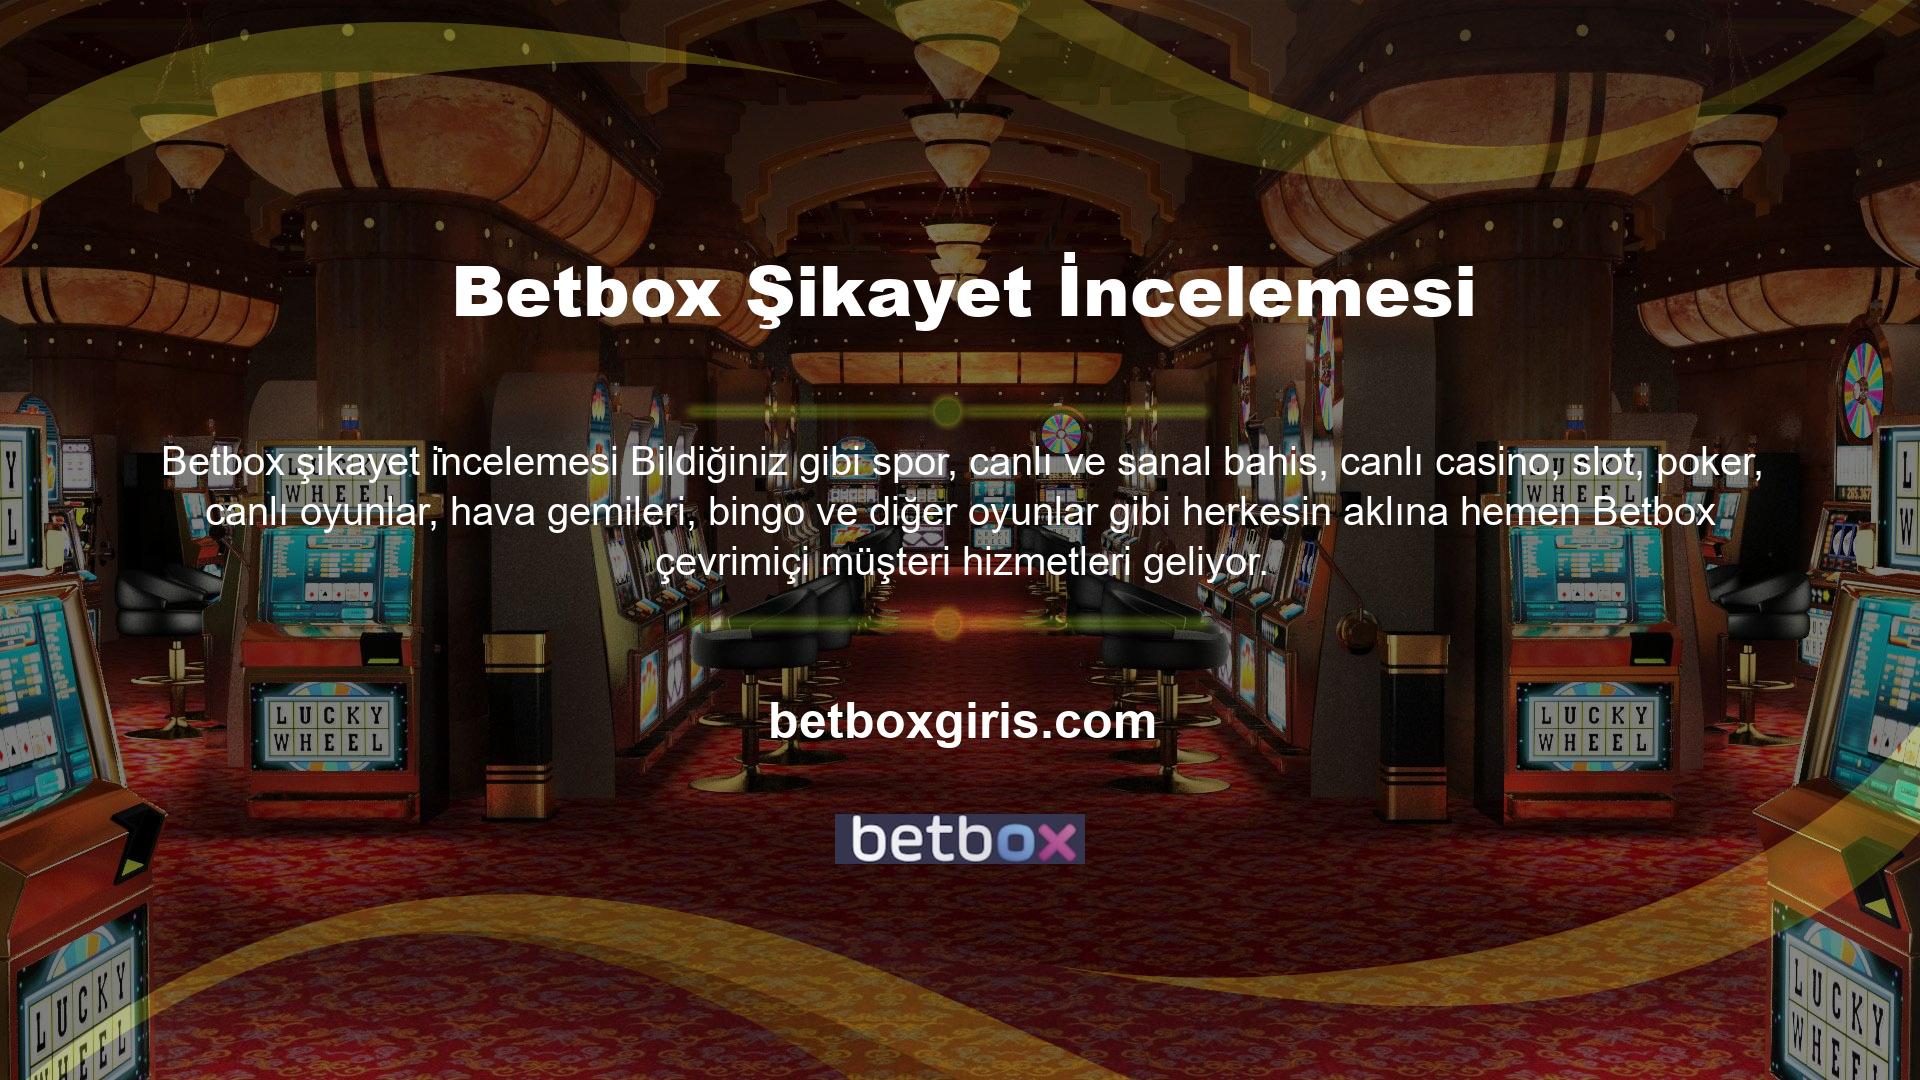 Ancak, Betbox TV özelliği ile hem sporseverler hem de yeni başlayanlar için beklentileri ortadan kaldıran Betbox bonusları, çevrimiçi hizmet içinde ayrı bir bölüme eklenmiştir